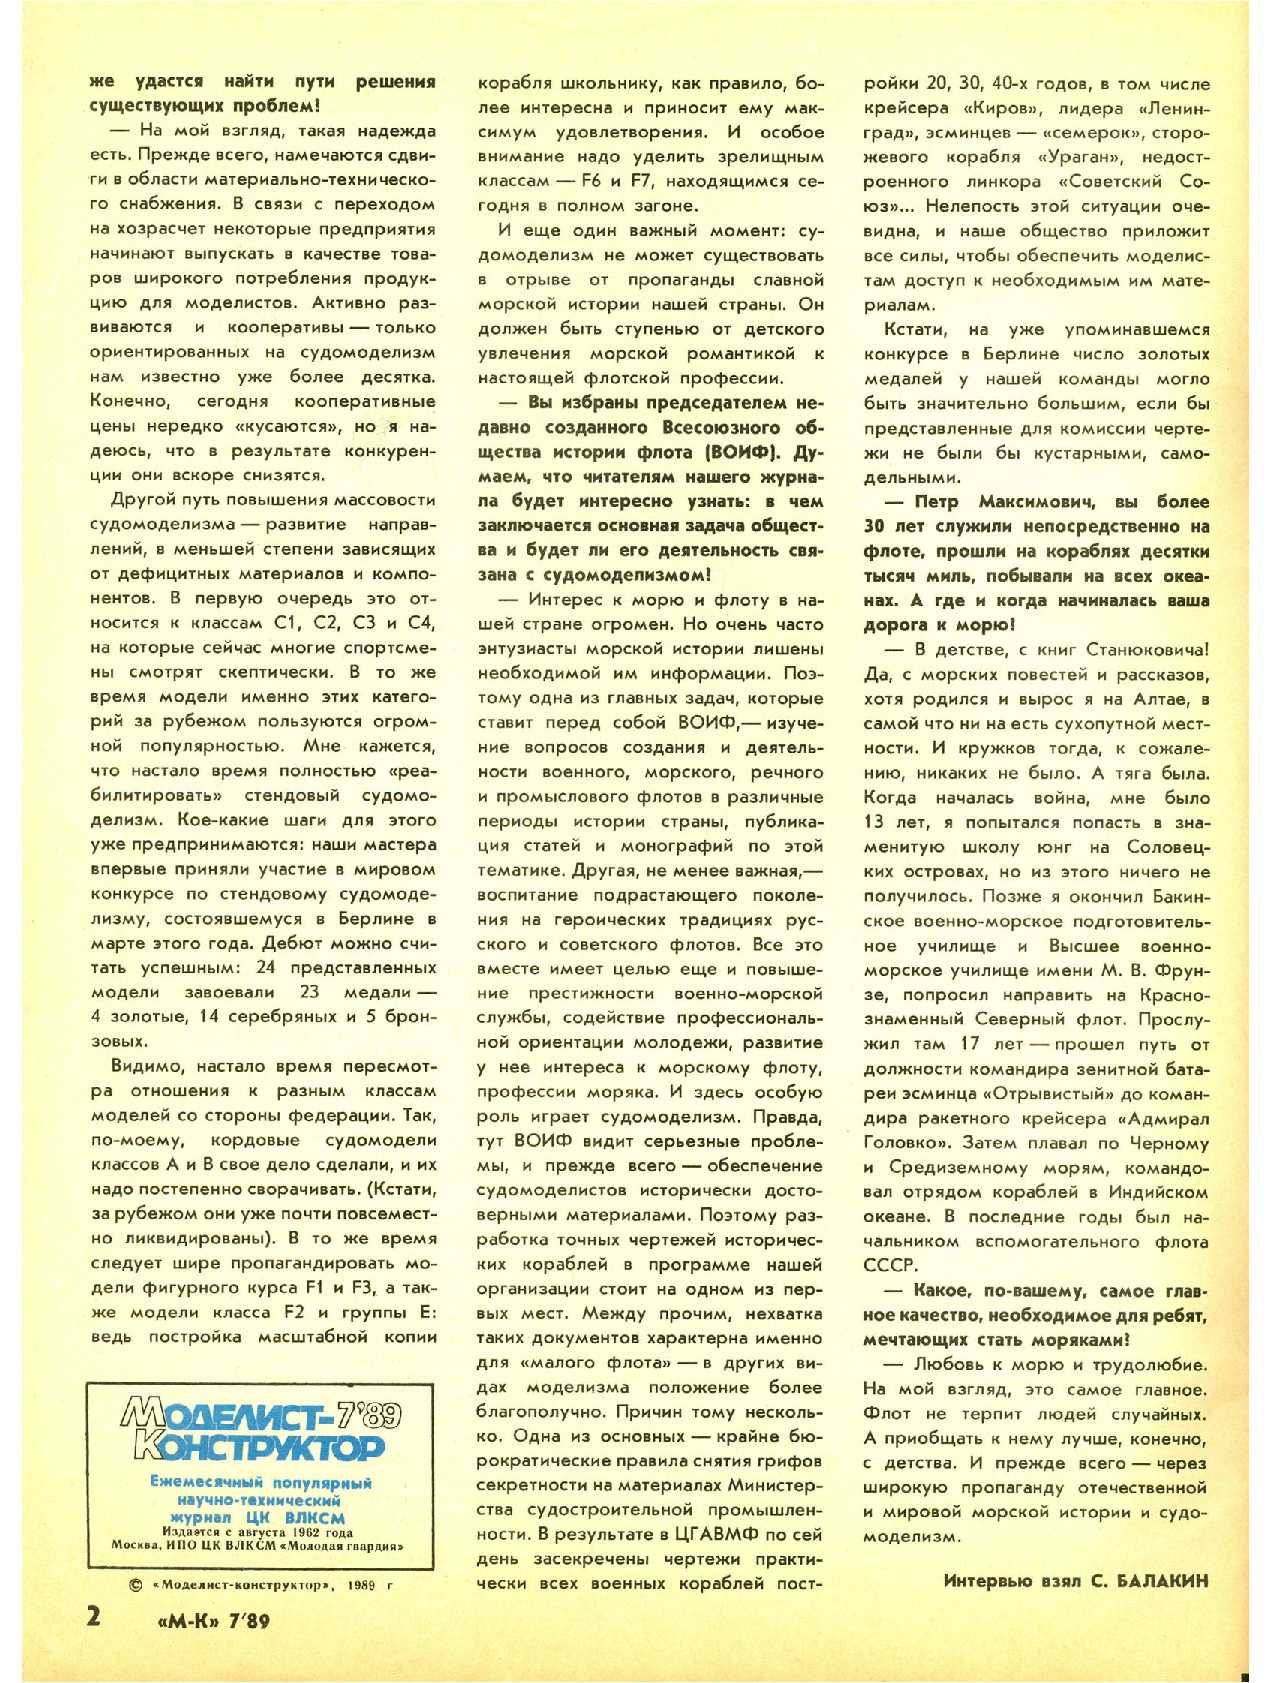 МК 7, 1989, 2 c.